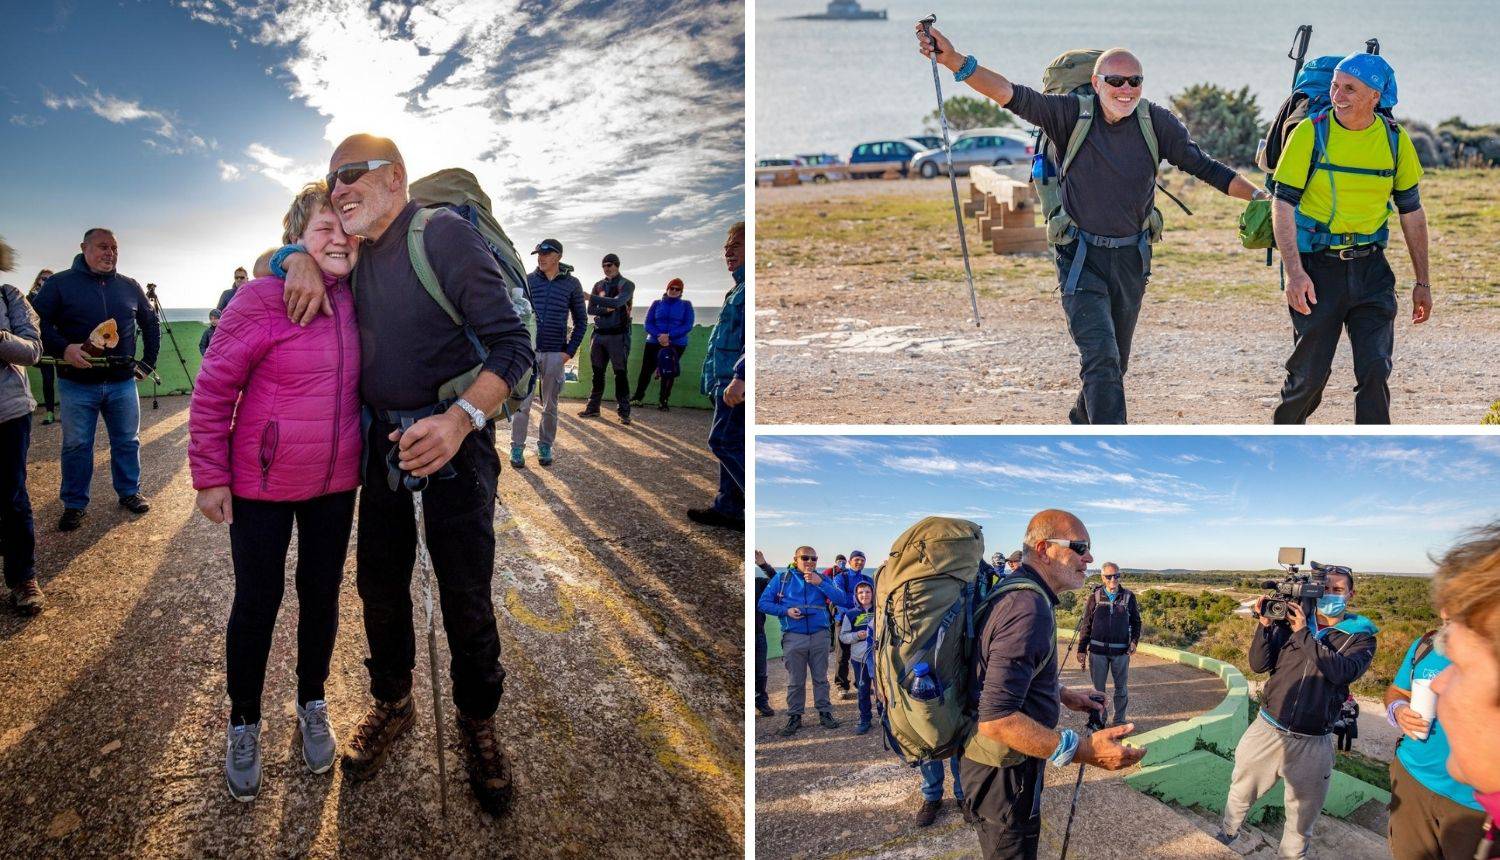 Nakon 1100 km hodanja, slijepi planinar vratio se doma: 'Smršavio sam 12 kilograma'